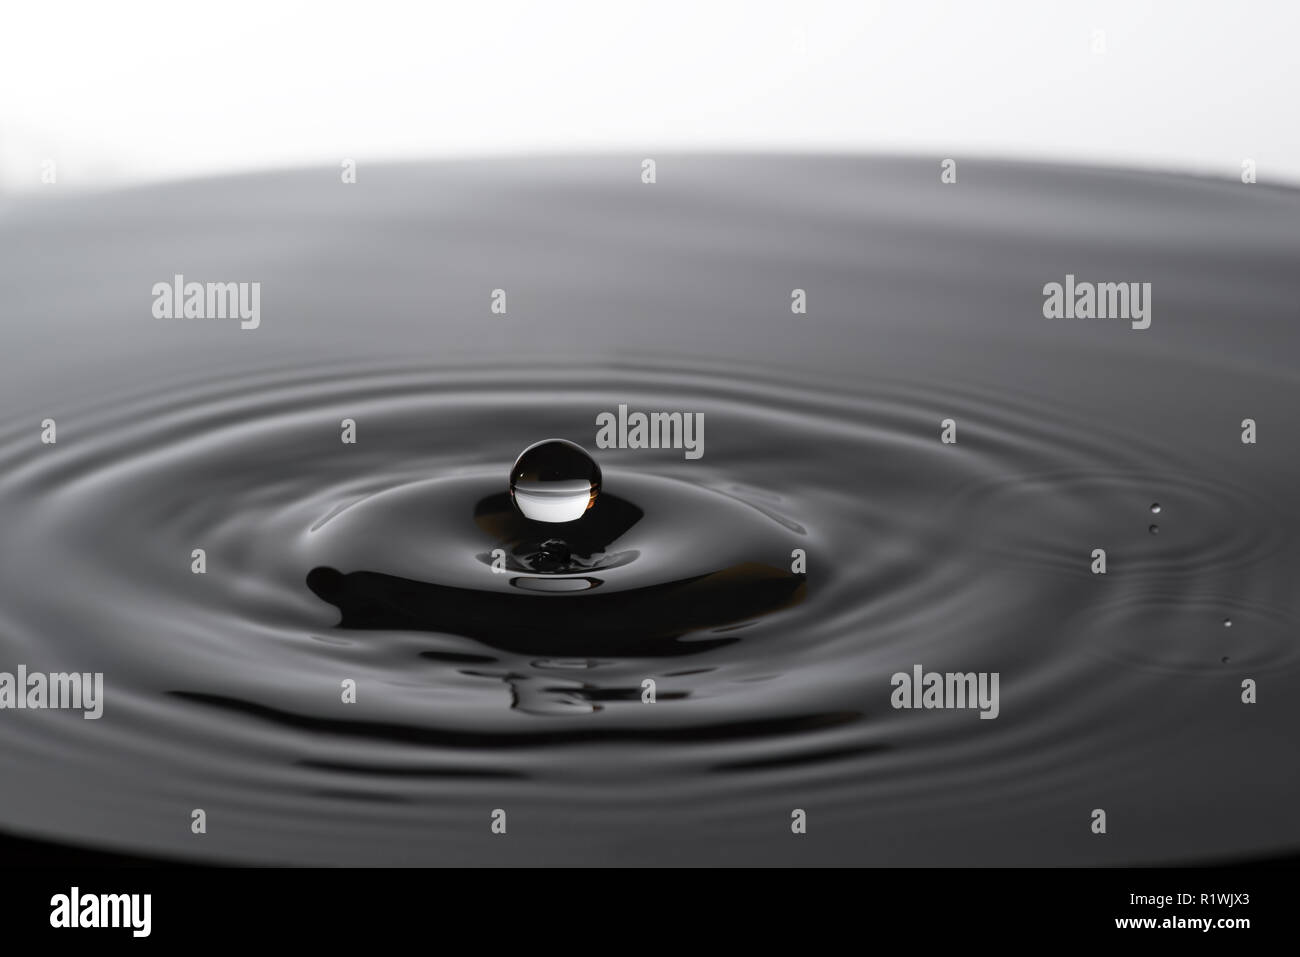 Acqua goccia caduta in acqua facendo a cerchi concentrici Foto Stock